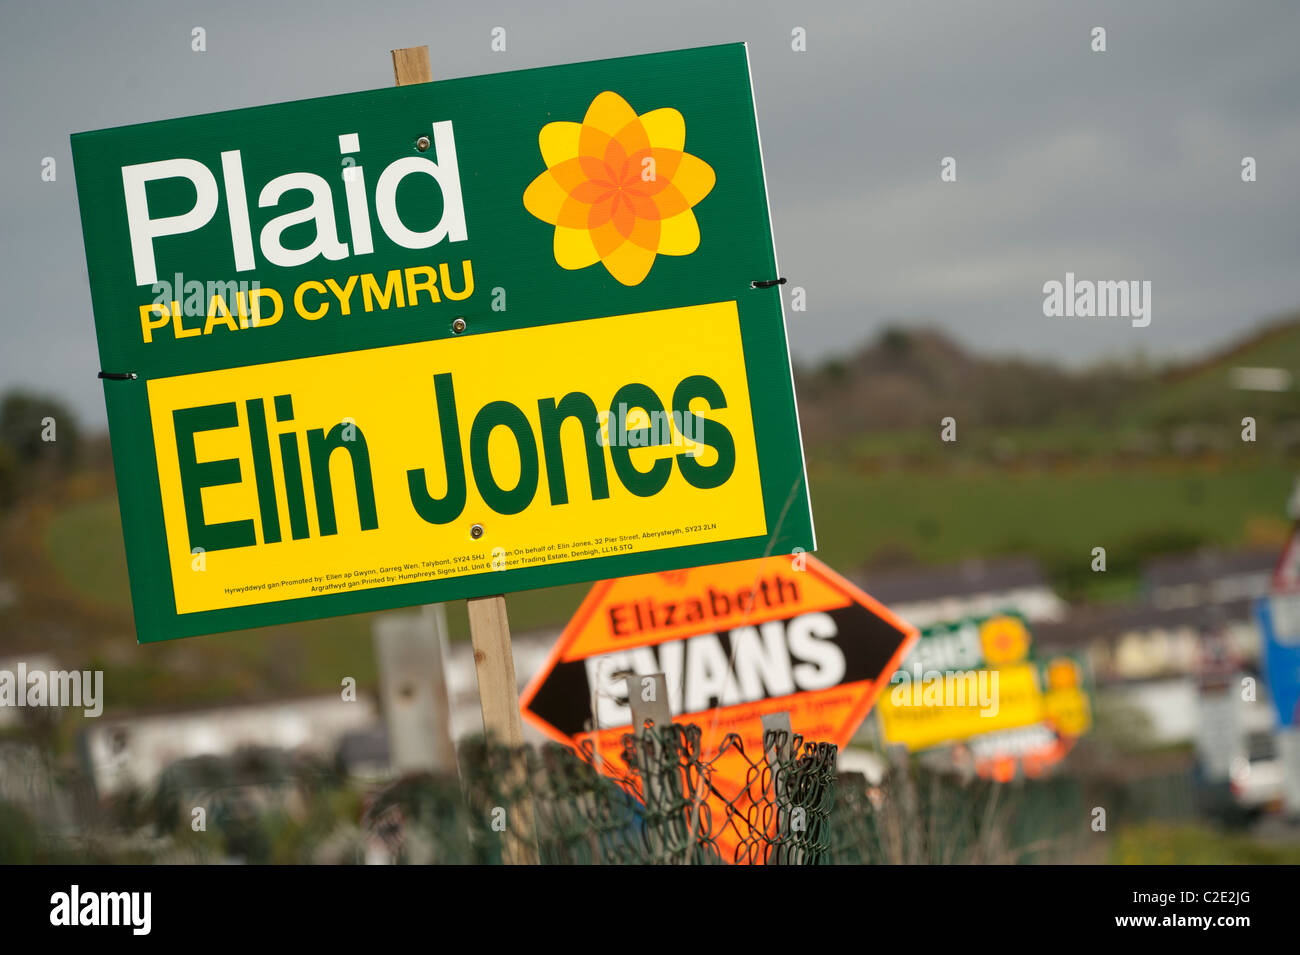 Plaid Cymru Wales 2011 Assemblée générale Gouvernement campagne électorale des bannières dans Elin Jones' circonscription Ceredigion, UK Banque D'Images